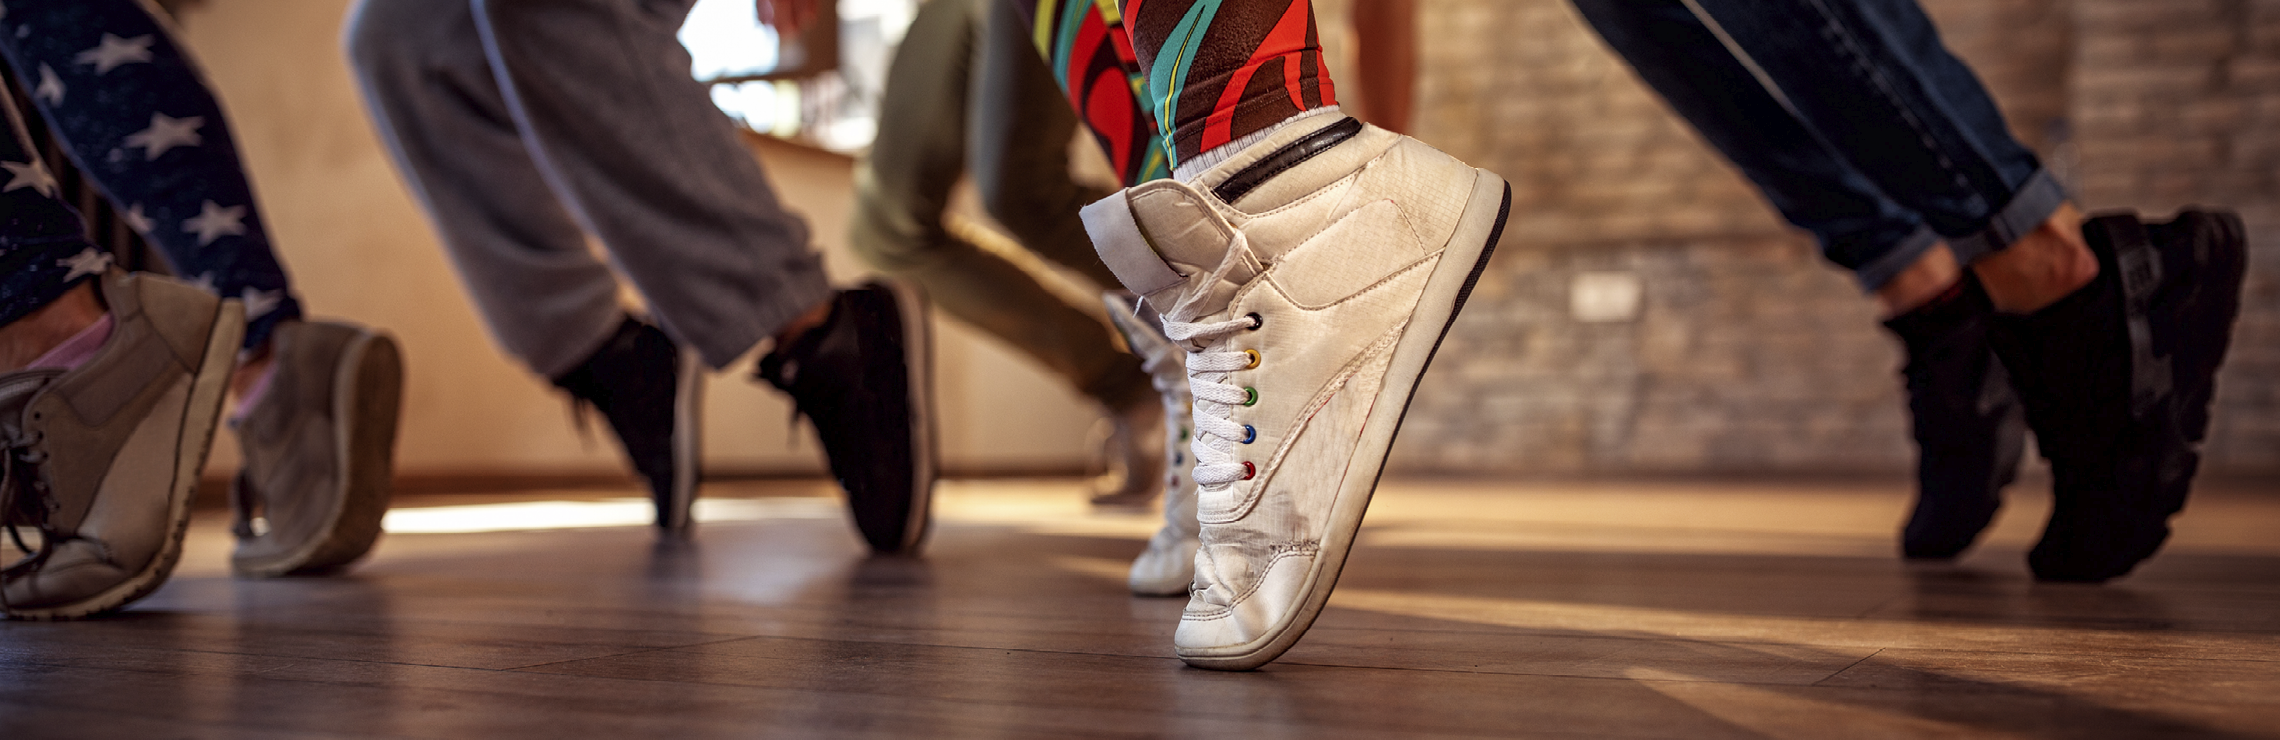 La zumba-fit est une combinaison de danse et d'aérobic, inspirée de musiques latines avec des touches de musique pop et urbaine.
Aux sports universitaires, il se déroule en deux parties: dans la première, nous travaillons des pas de base de divers styles de danse tout en élevant le rythme cardiaque au travers de chorégraphies simples. Dans la deuxième, nous ajoutons des exercices plus musculaires à l'entraînement de danse.